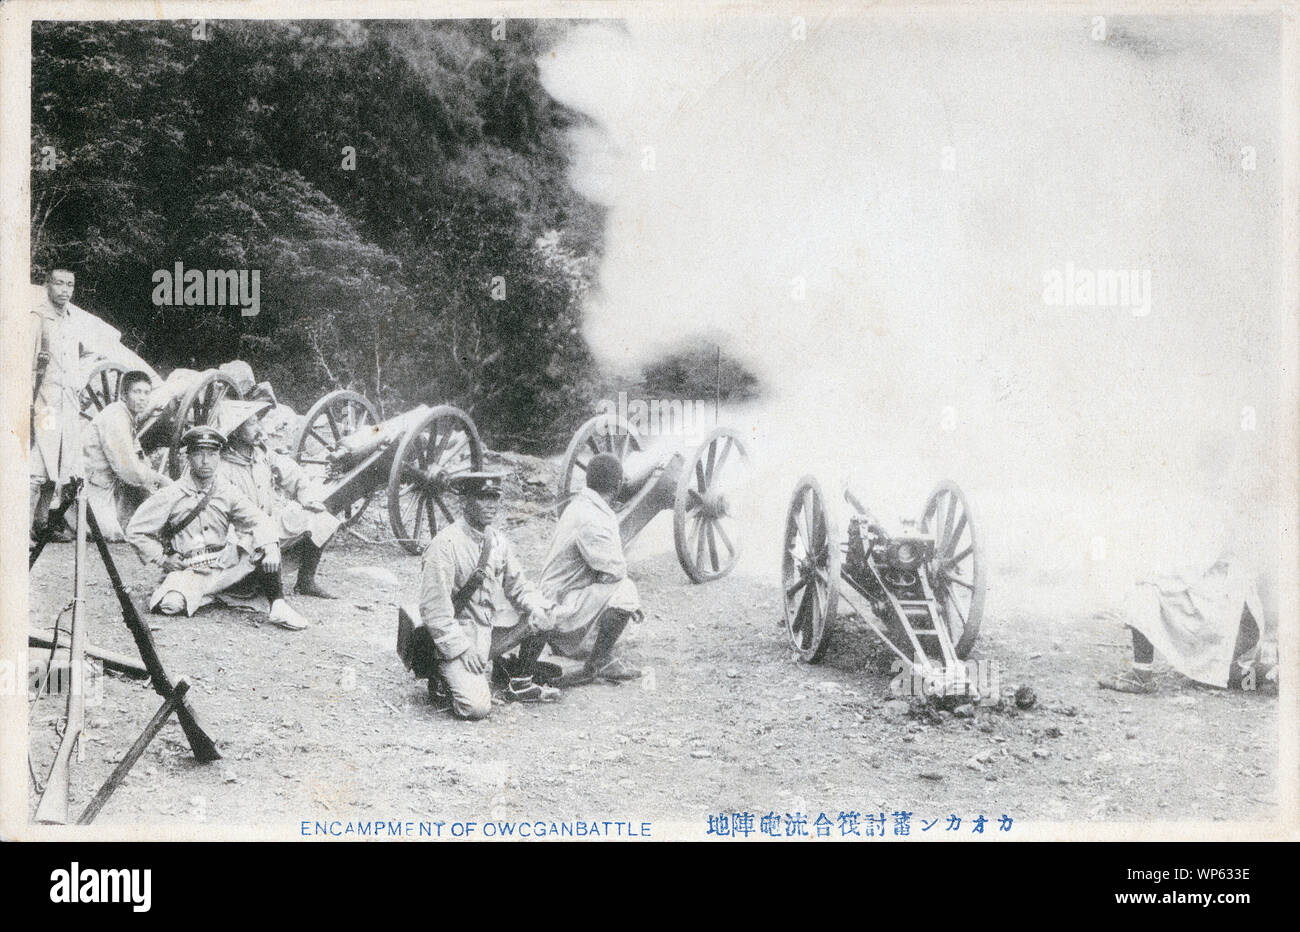 [ 1910 - Japon l'artillerie japonaise en action ] - L'artillerie de l'Armée impériale japonaise en action. 20e siècle vintage carte postale. Banque D'Images